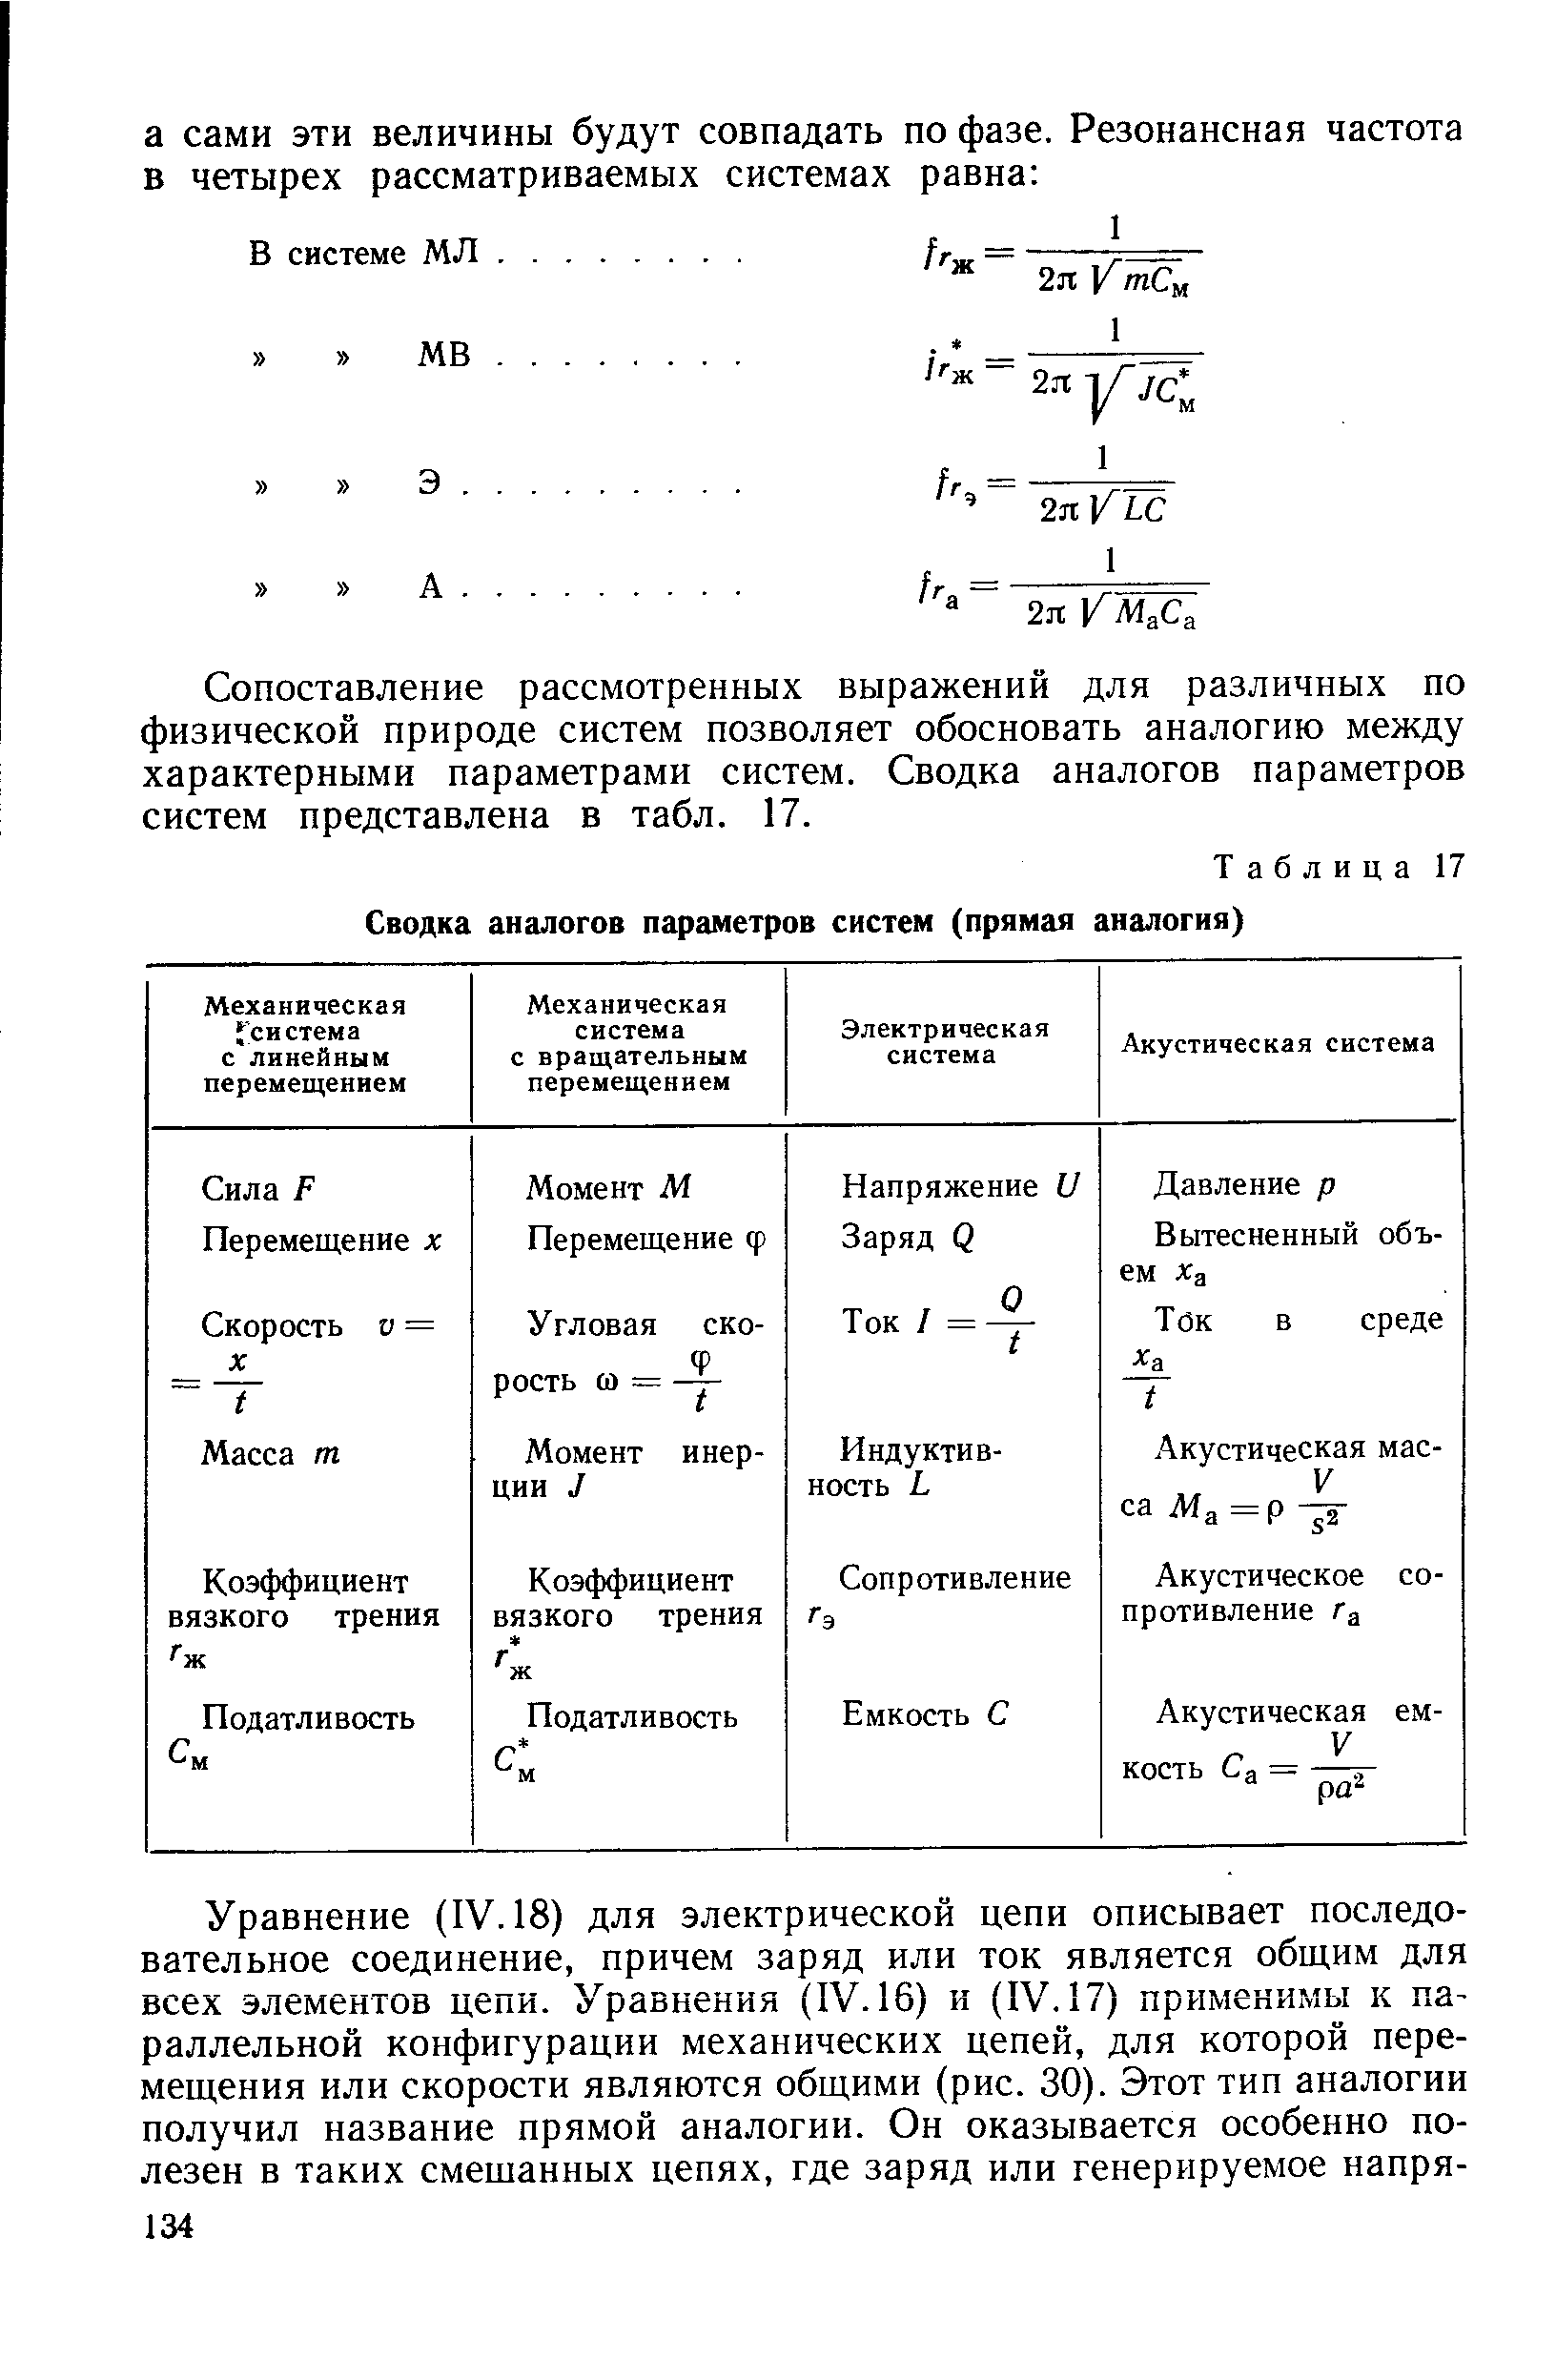 Таблица 17 Сводка аналогов параметров систем (прямая аналогия)
